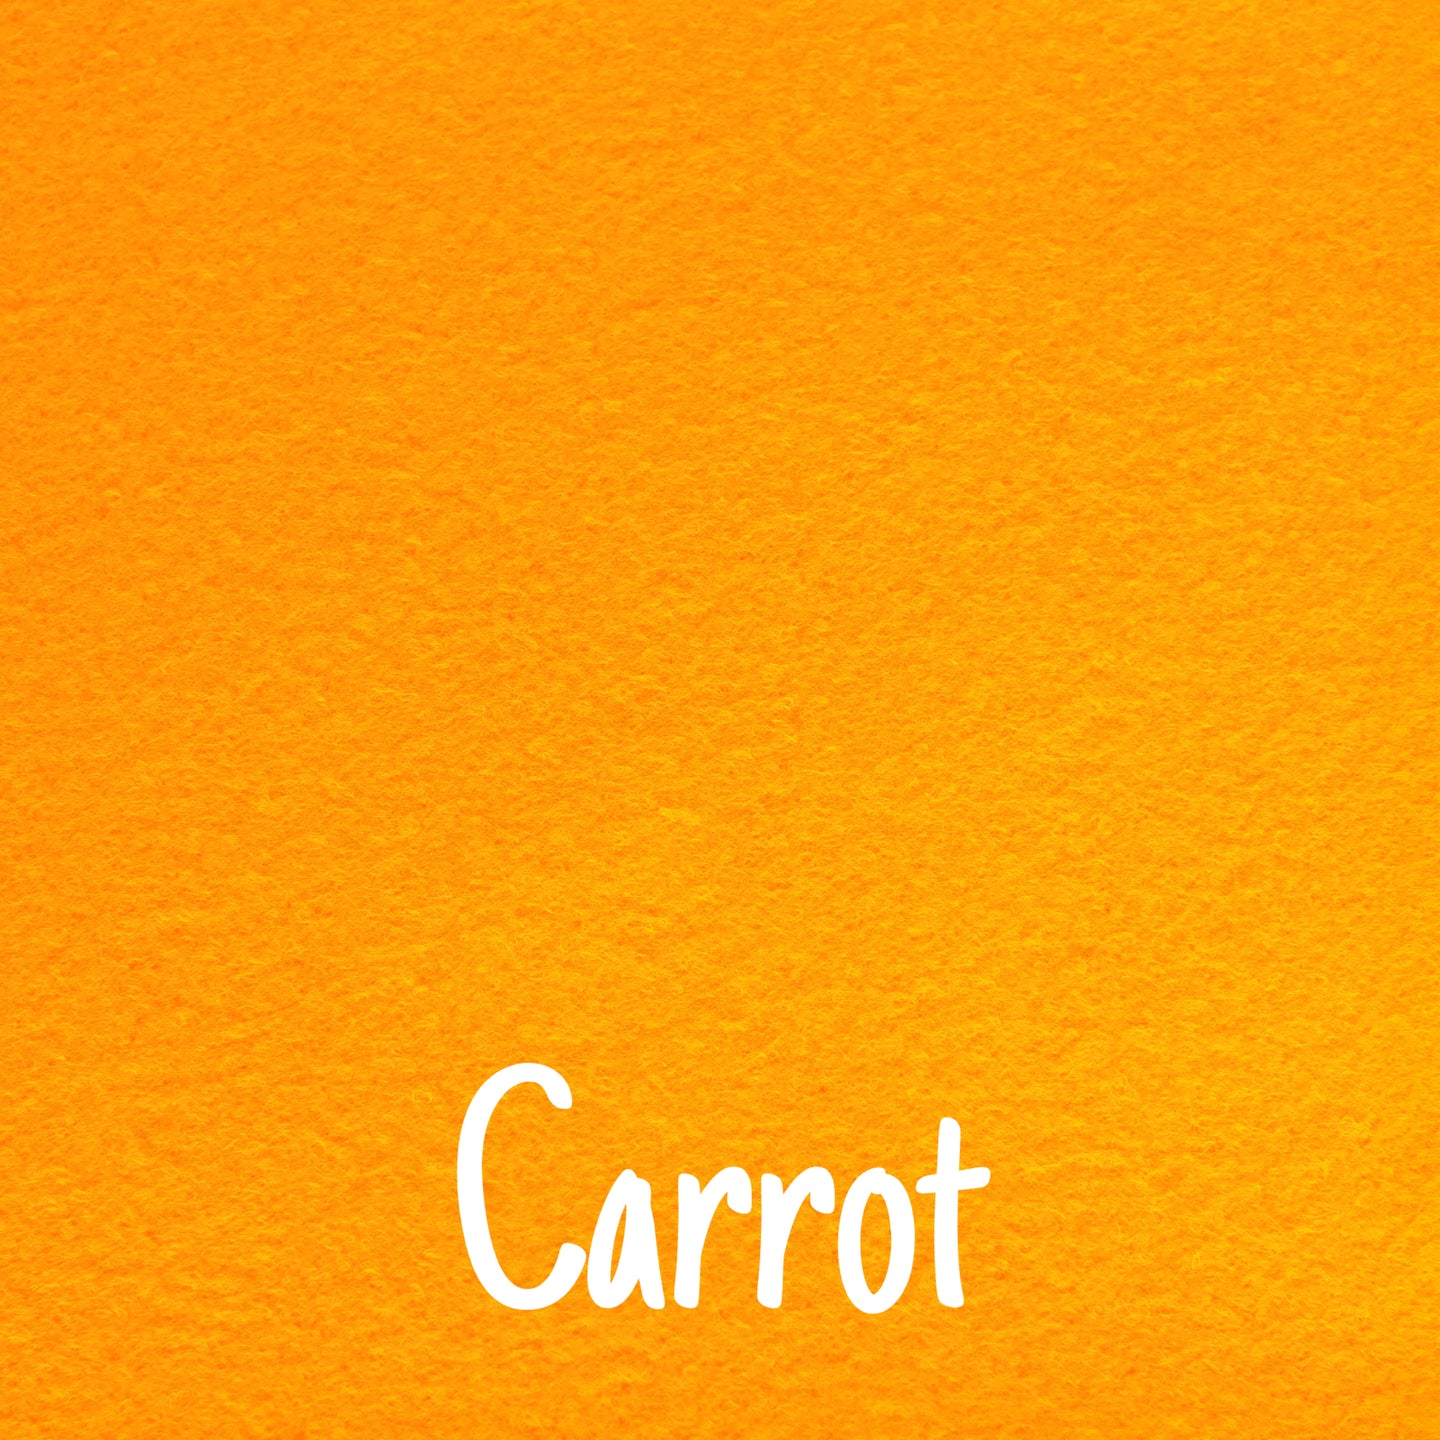 carrot orange wool blend felt